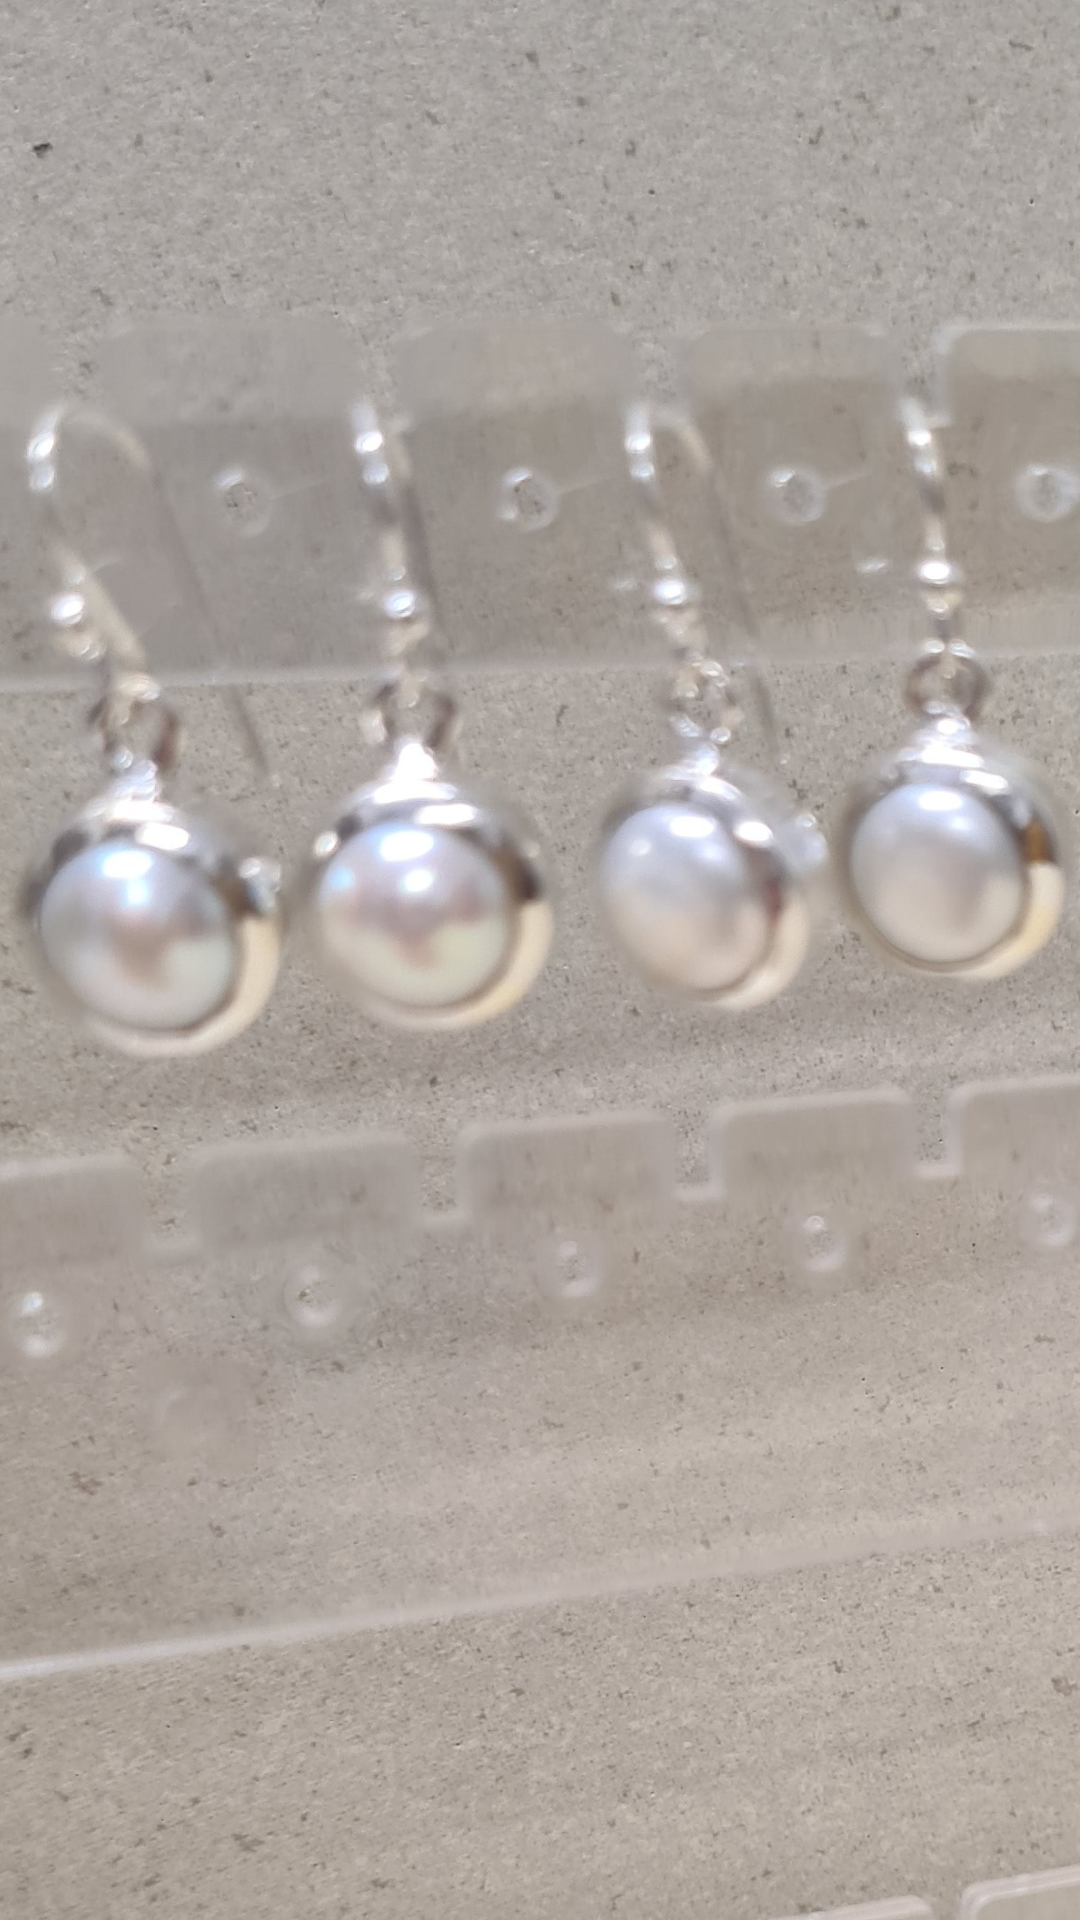 Sterling silver/ Freshwater pearl dangle earrings